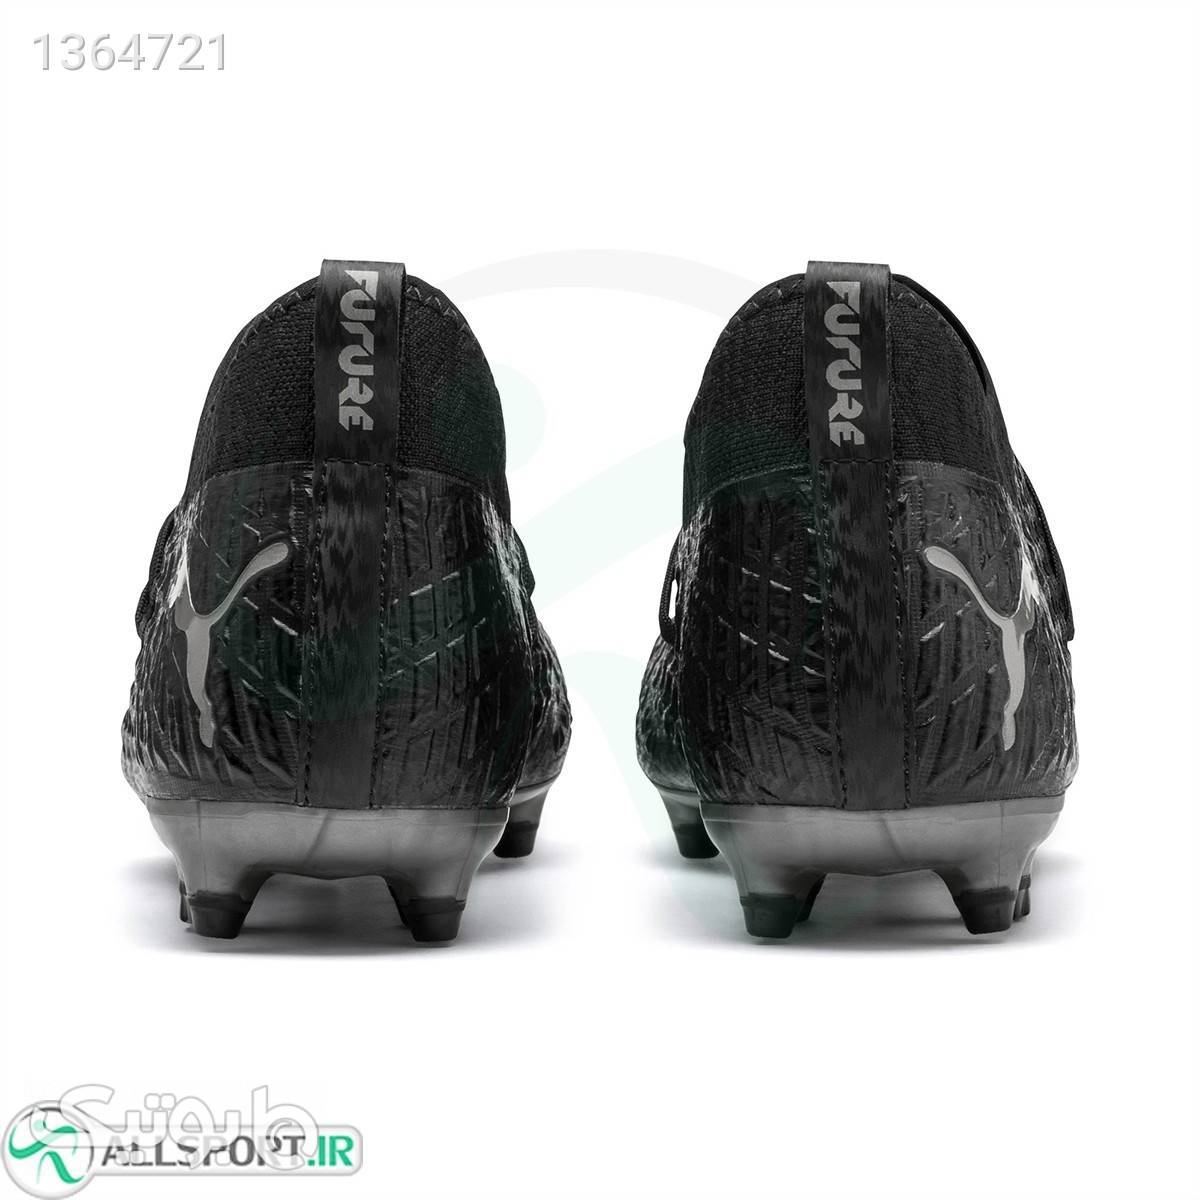 کفش فوتبال پوما فیوچر Puma Future 4.3 Netfit FgAg M 10561202